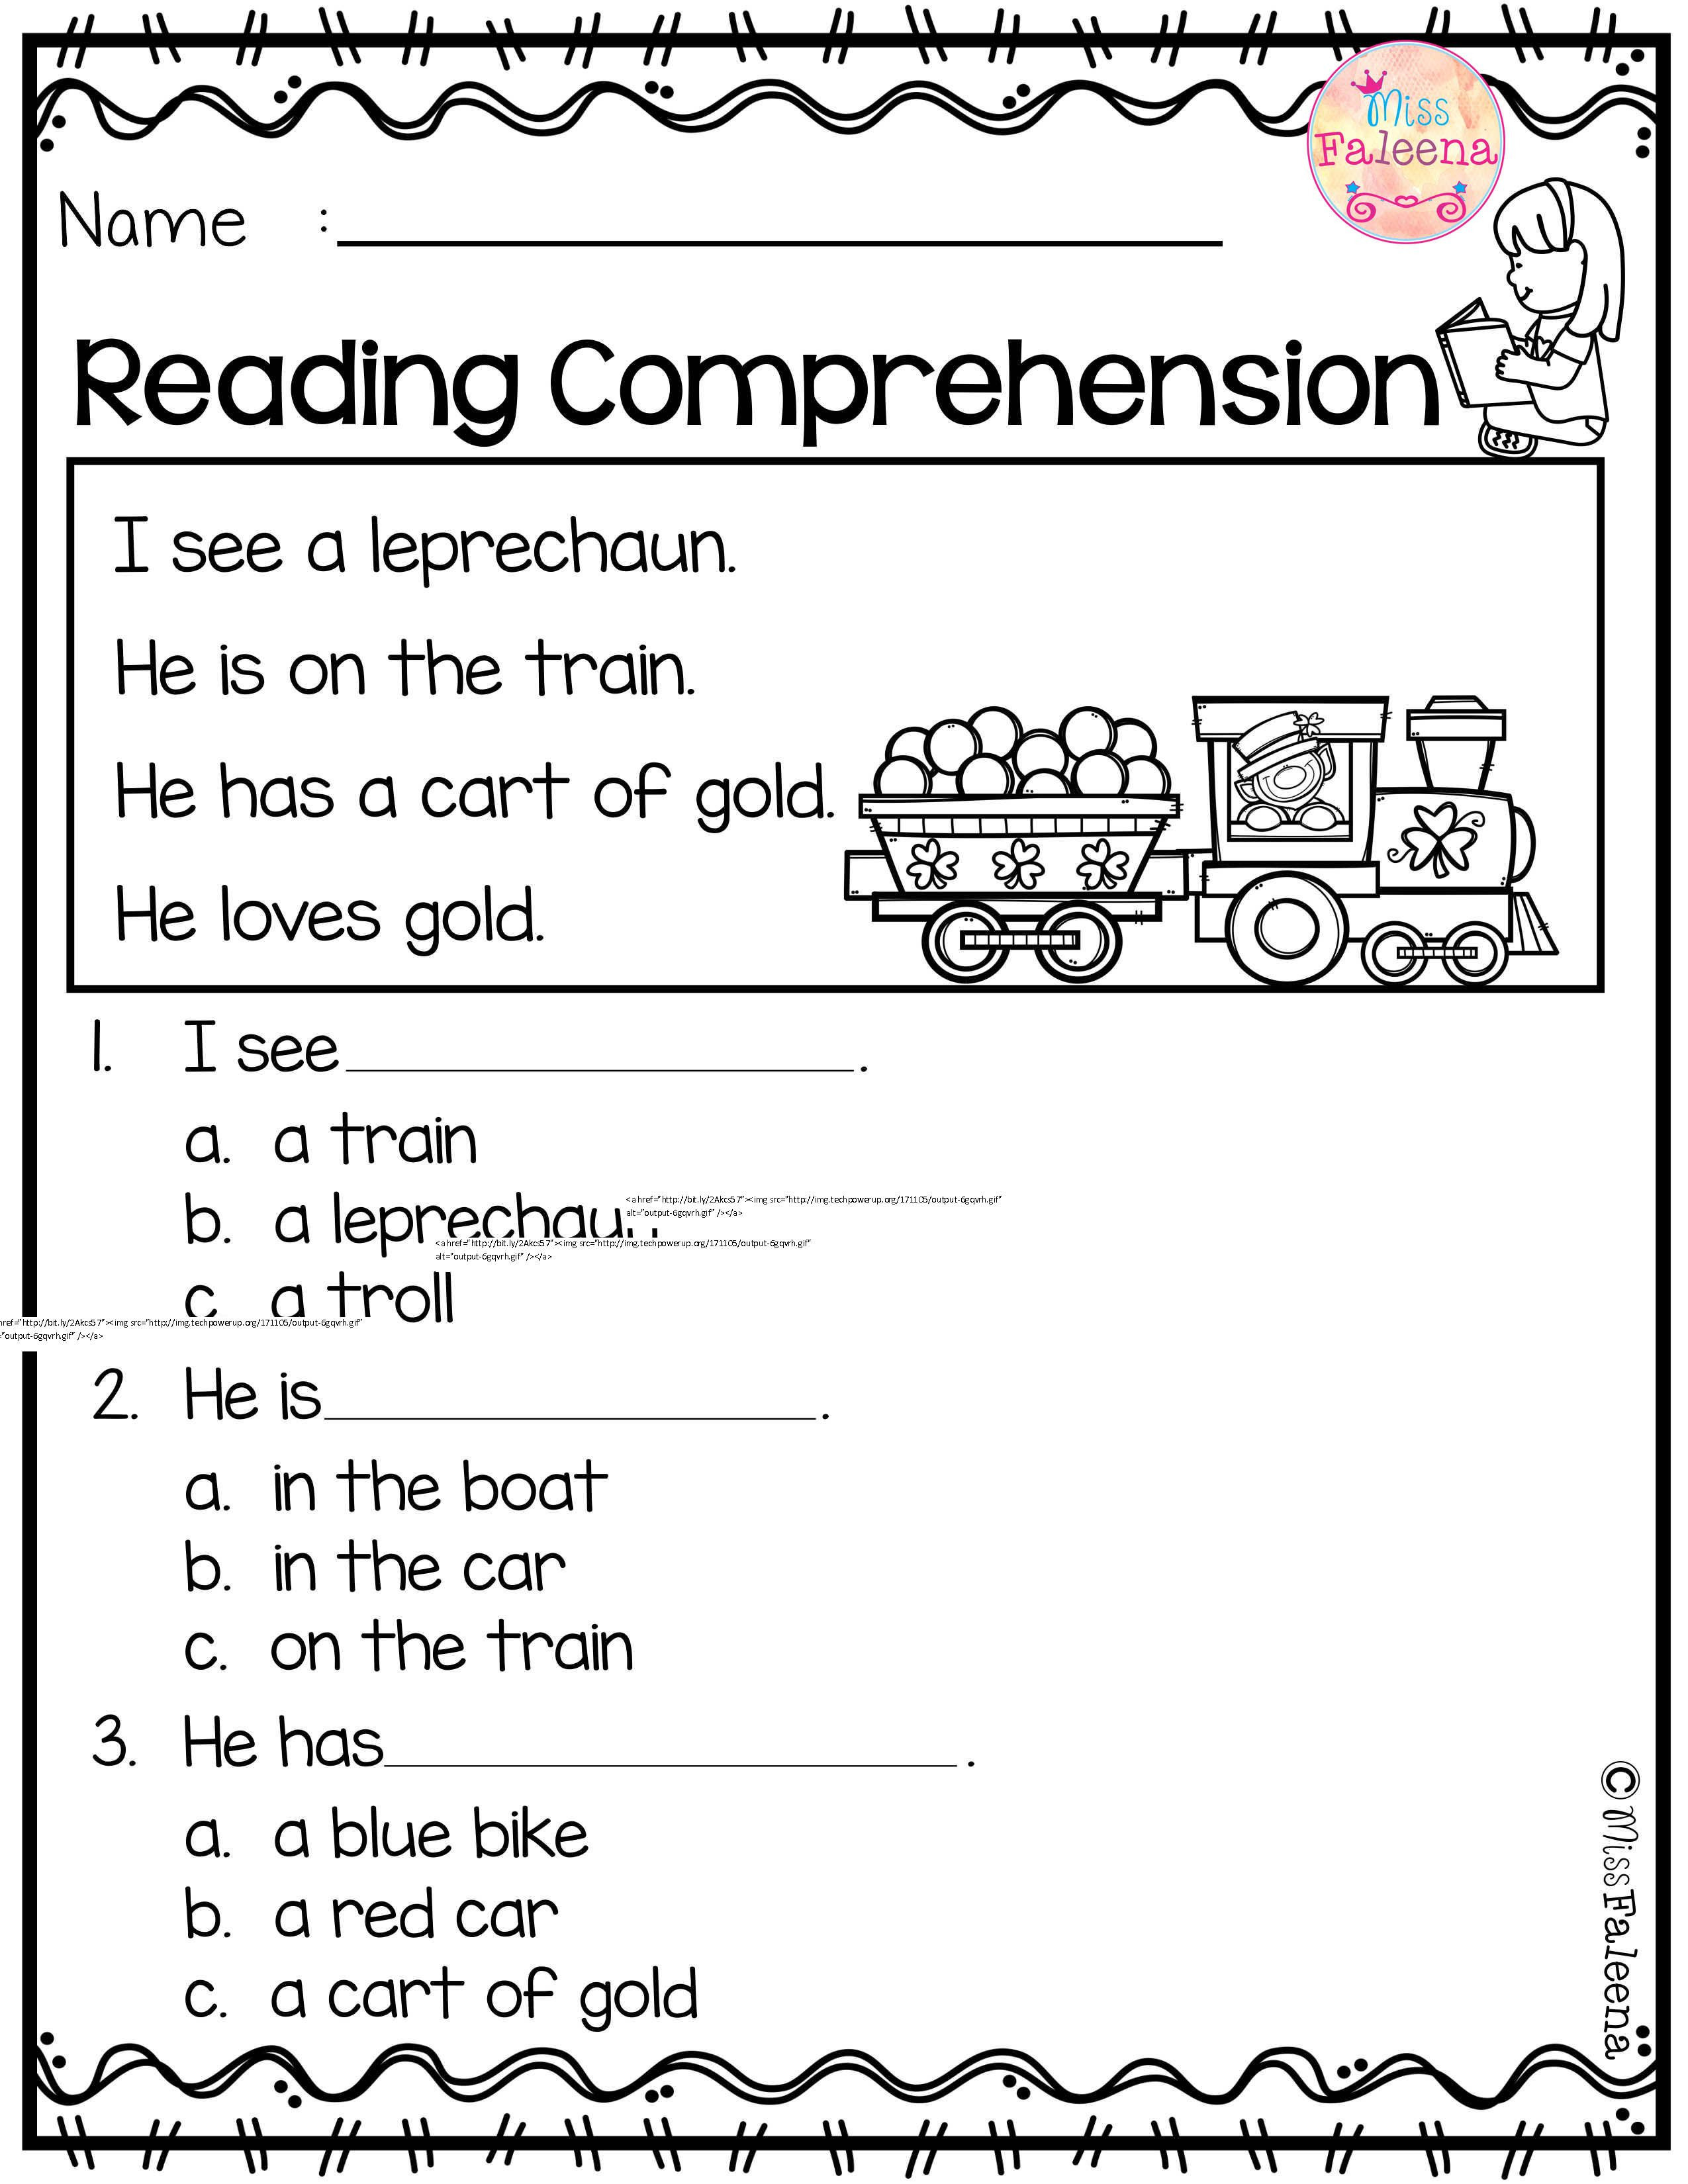 Kindergarten Reading Comprehension Exercises Activities For